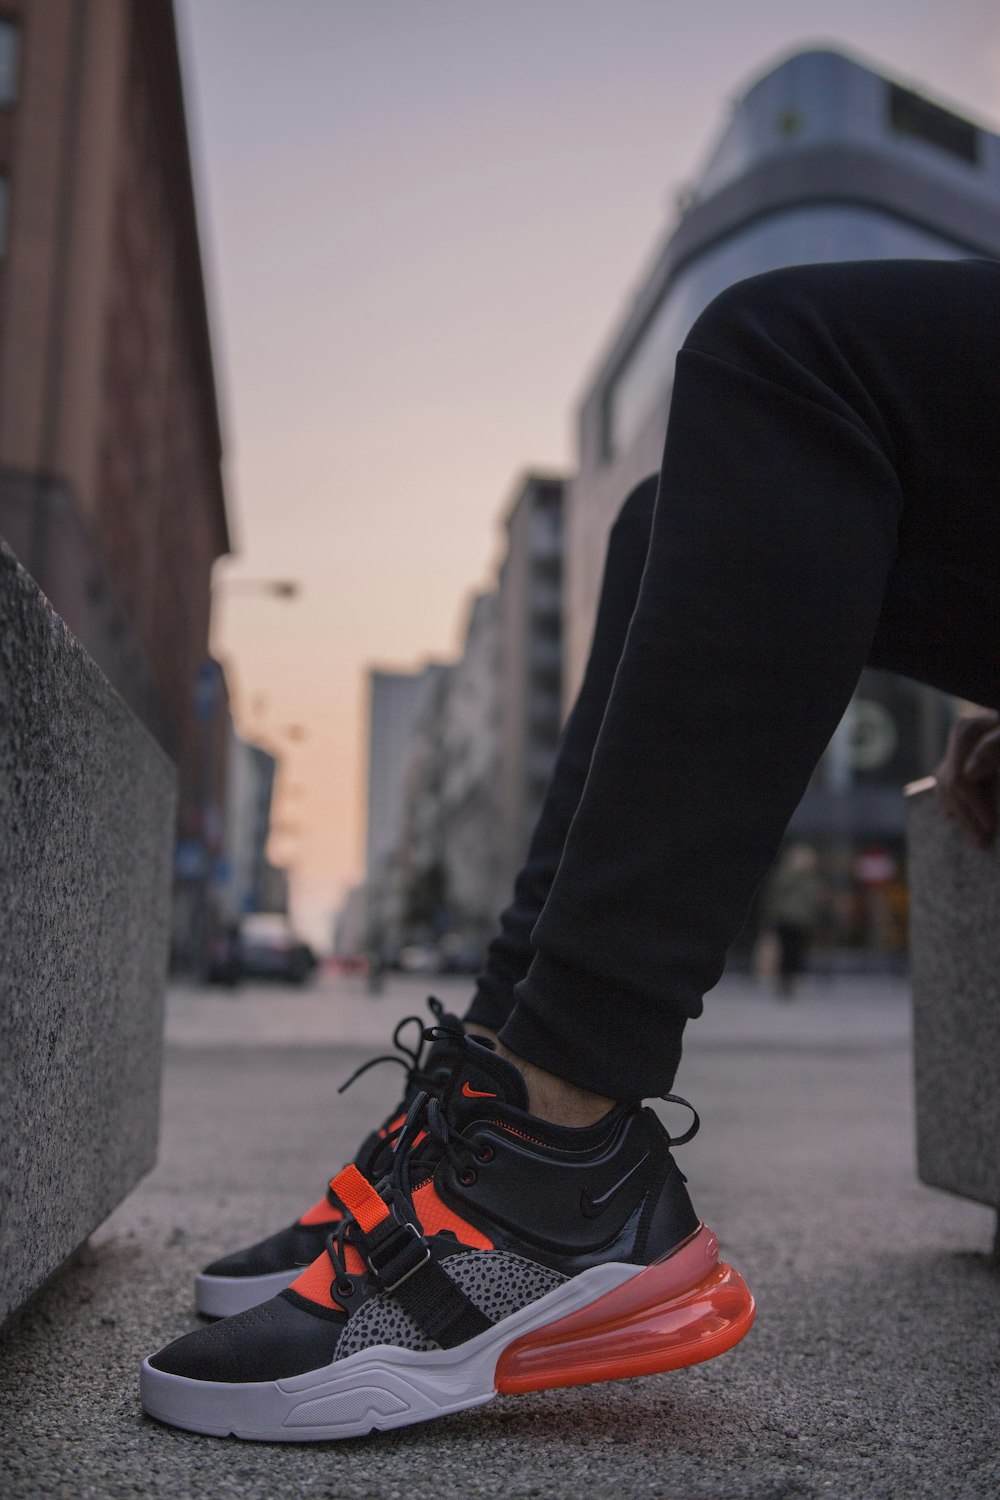 Personne portant des chaussures nike air max 270 noires et grises photo –  Photo Varsavia Gratuite sur Unsplash